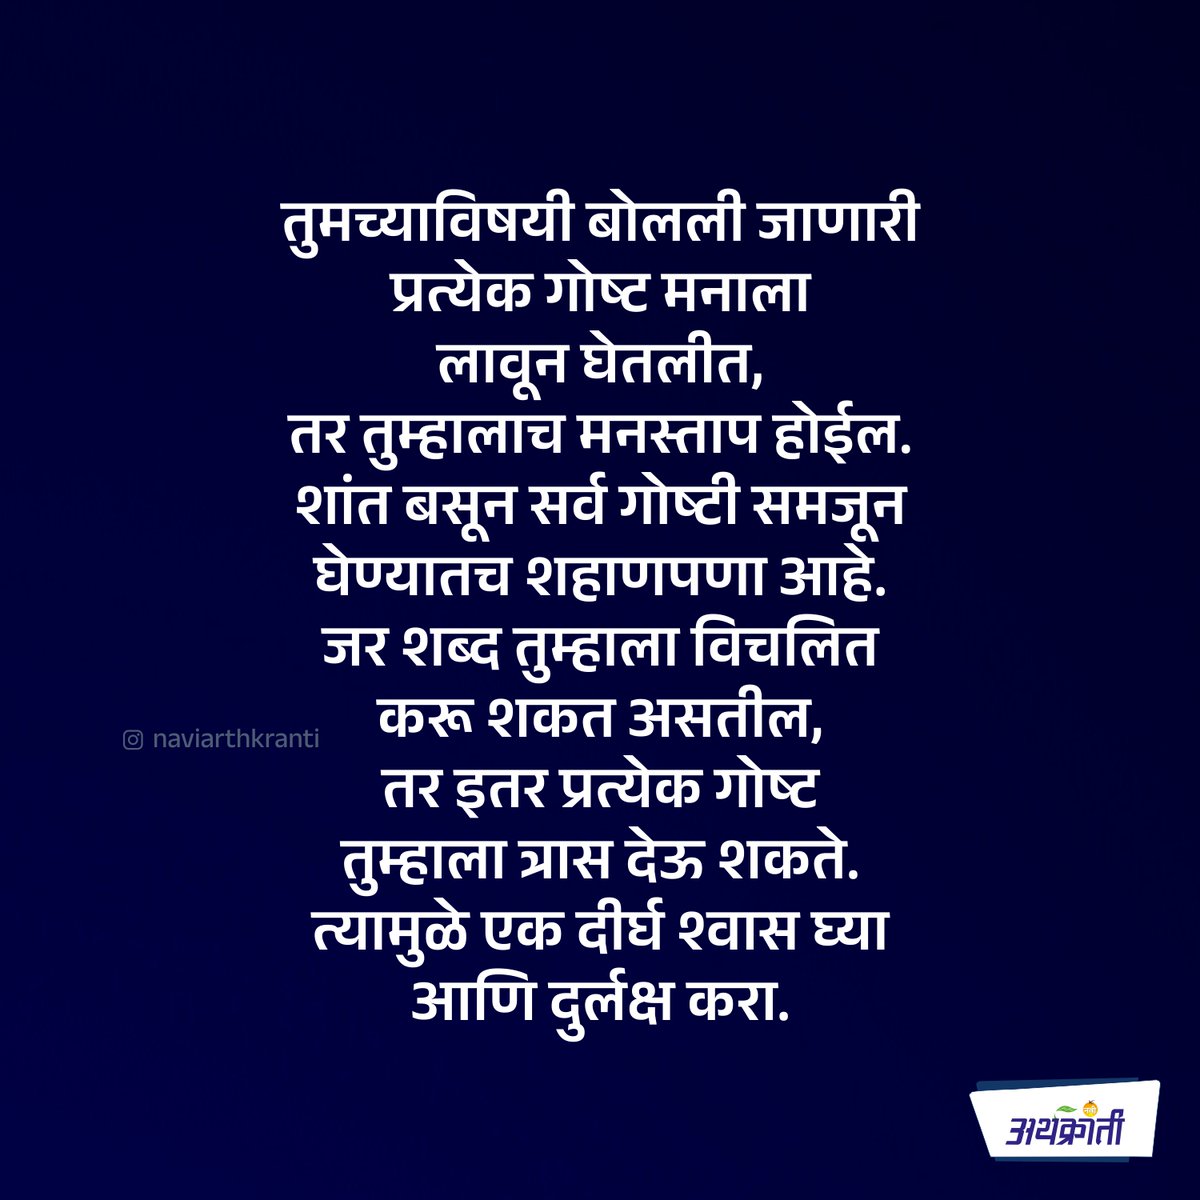 एखाद्याचे वाईट शब्द तुम्हाला विचलित करू शकत असतील, तर जगातील प्रत्येक गोष्ट तुम्हाला त्रास देऊ शकते. फॉलो करा : naviarthkranti.com #tuesdayvibe #tuesday #सुविचार #MarathiMotivation #MarathiSuvichar #marathi #naviarthkranti #quote #suvichar #goodmorning #quote #inspirational